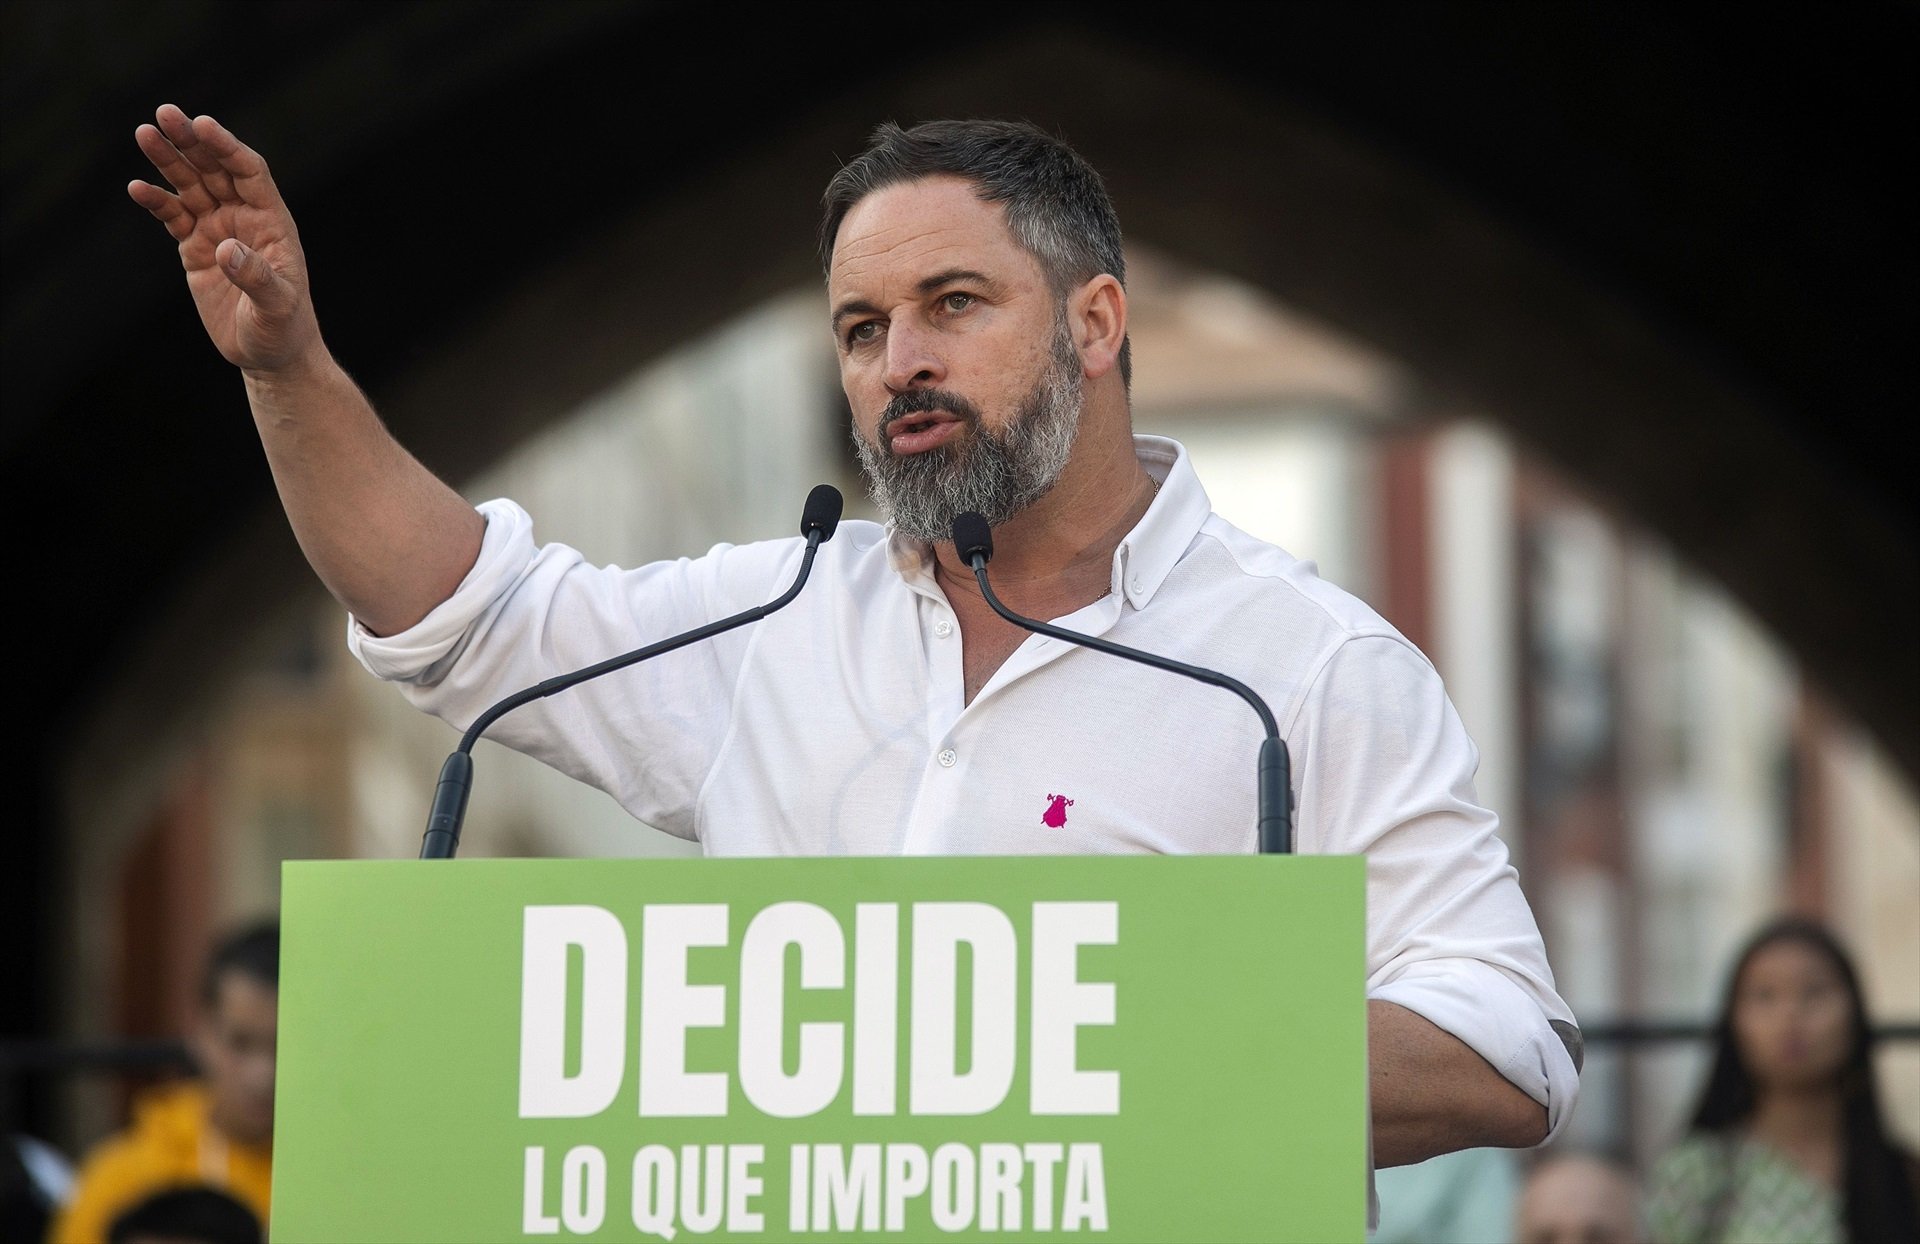 Las 6 propuestas del programa de Vox que pintan una España en blanco y negro y amenazan Catalunya